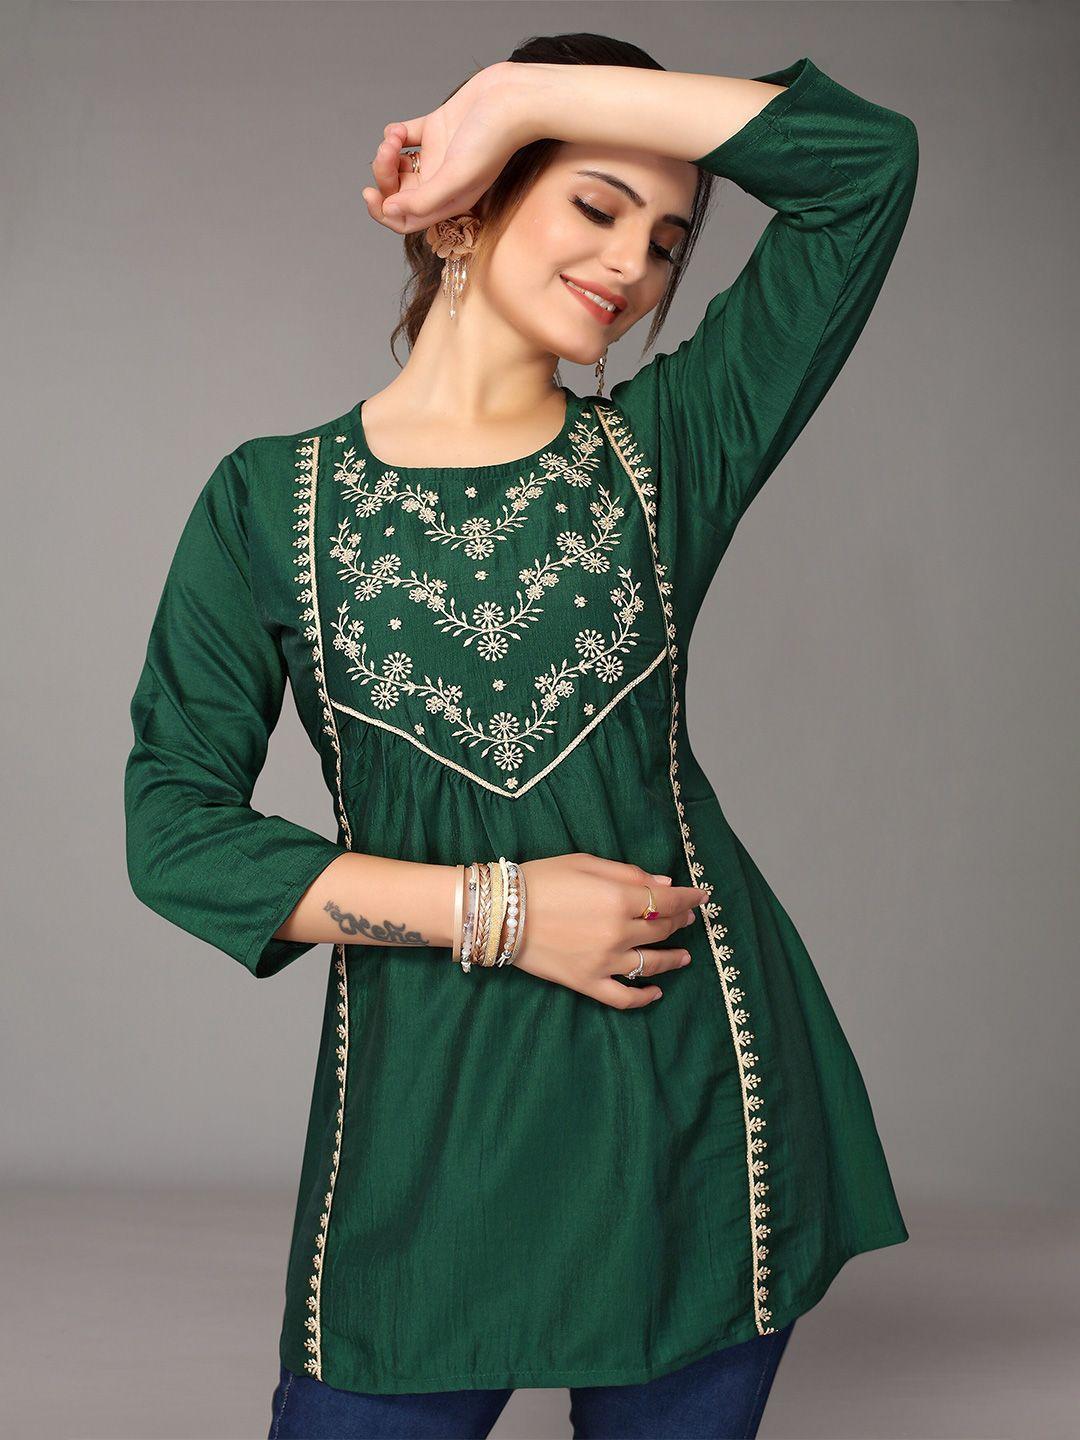 nimayaa green embellished indigo longline top